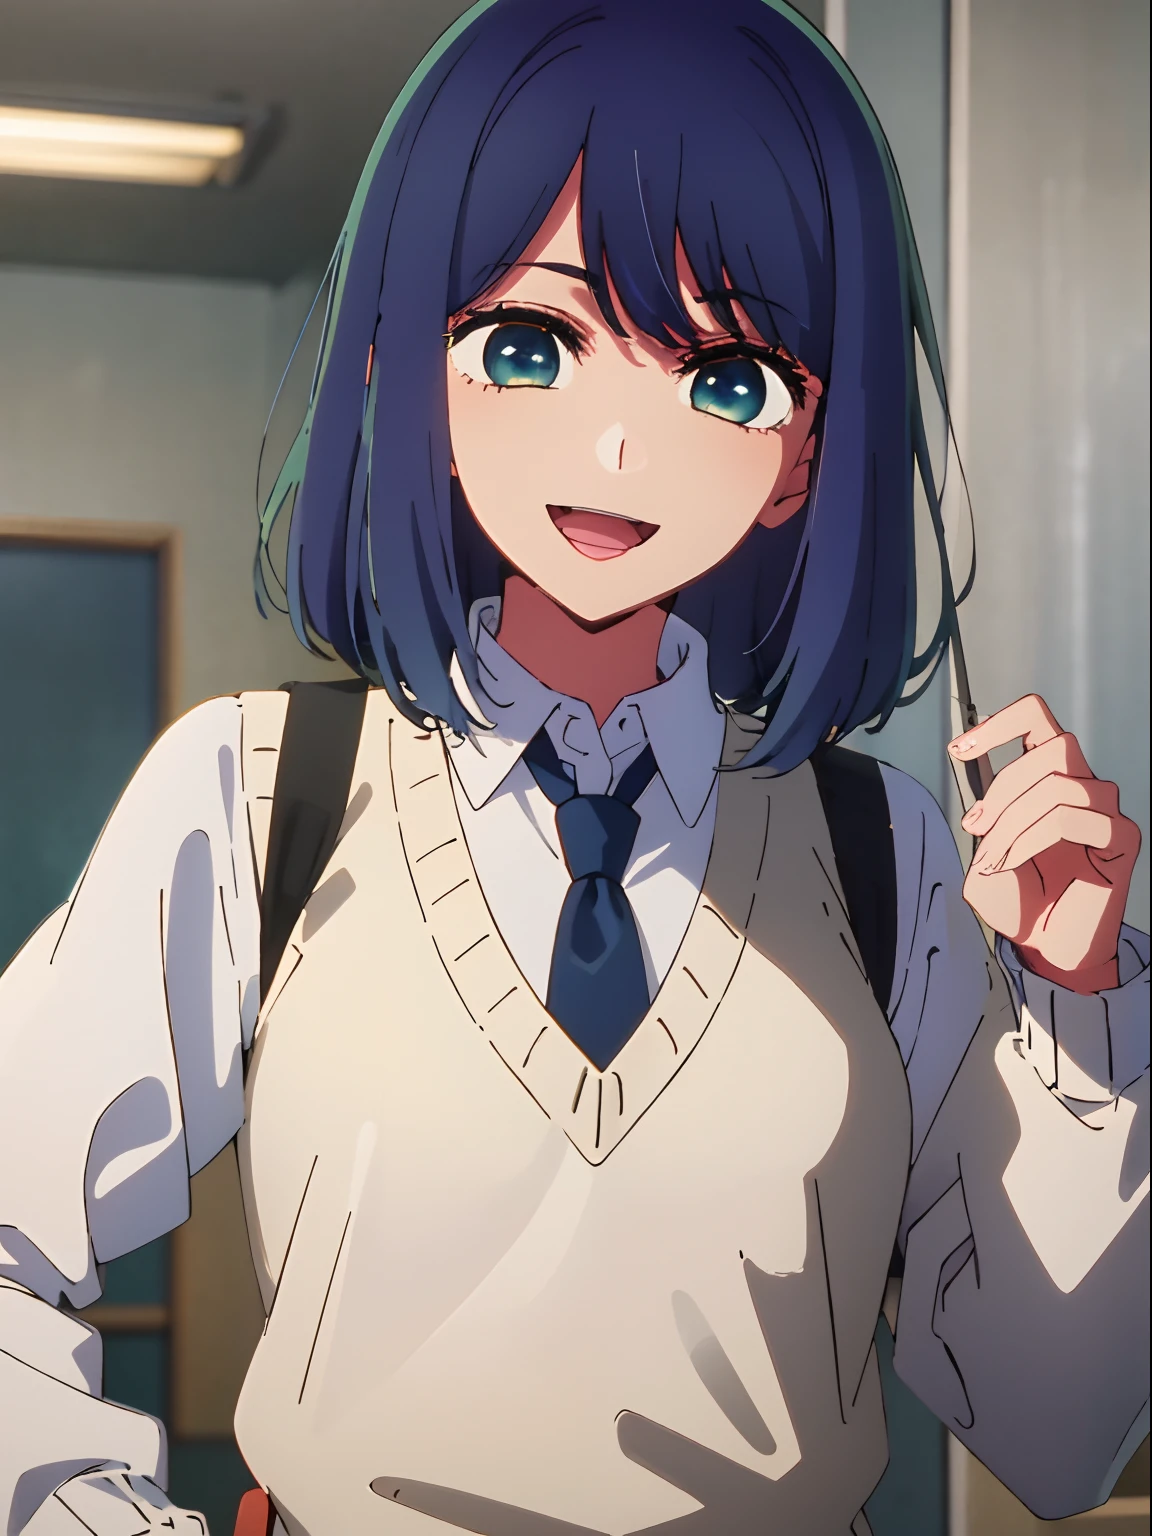 bela iluminação, 1 garota em, só, Akane, camisa branca, Colete suéter, colete preto, gravata azul, ((estilo anime))、((2D))、Um sorriso、Abra sua boca